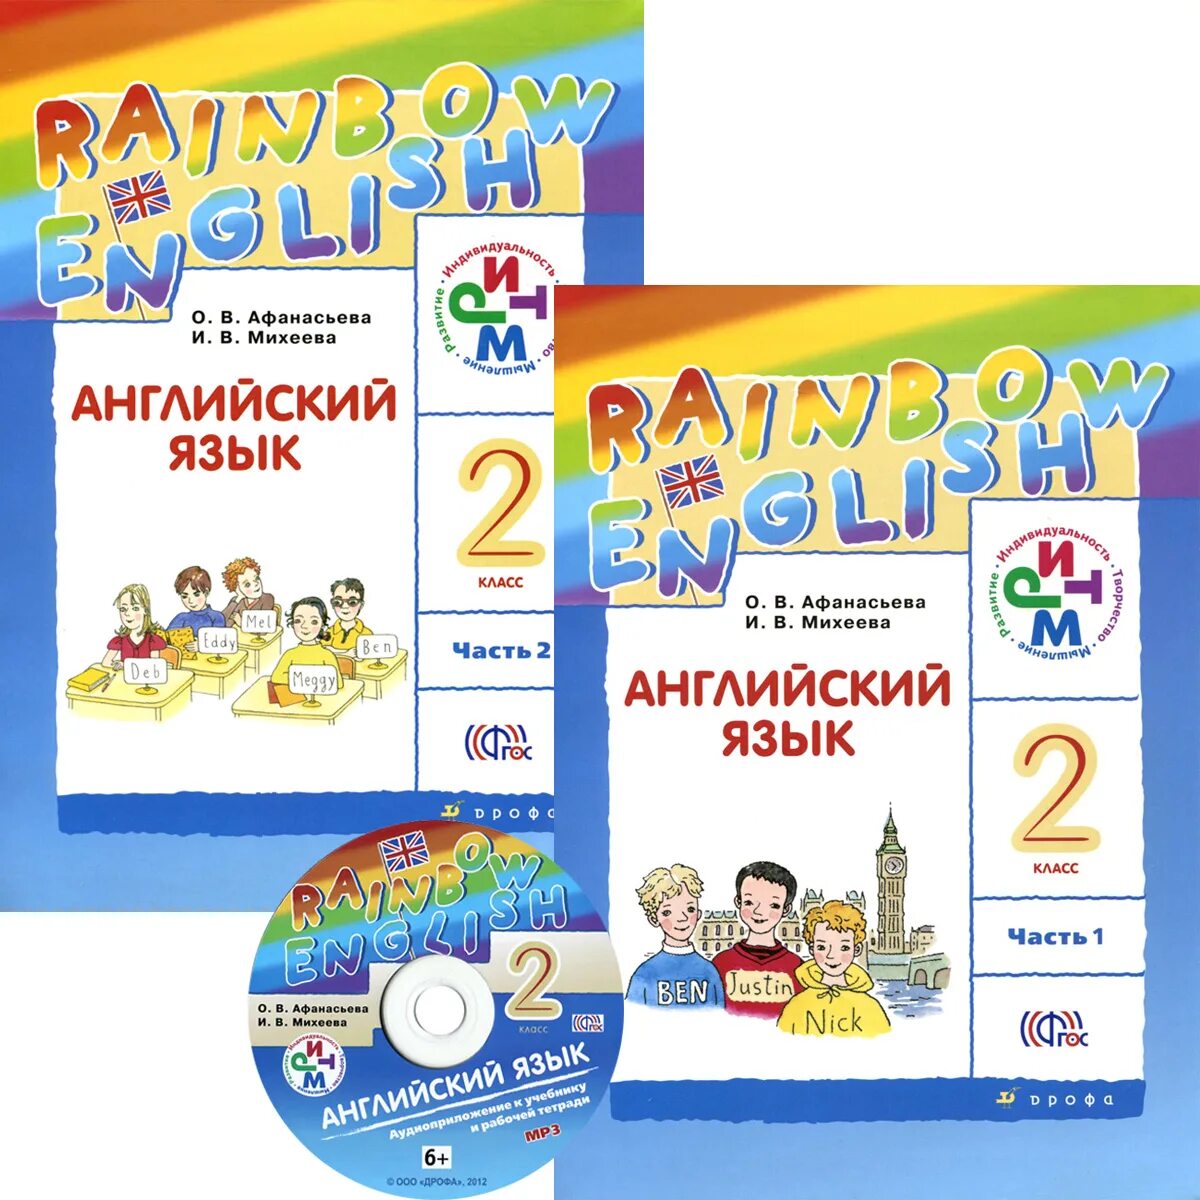 Rainbow 2 book 2. 2 Класс английский язык Rainbow English Афанасьева Михеева. УМК Афанасьева Михеева Rainbow English. Английский язык 2 класс учебник. УМК Rainbow English 2 класс.